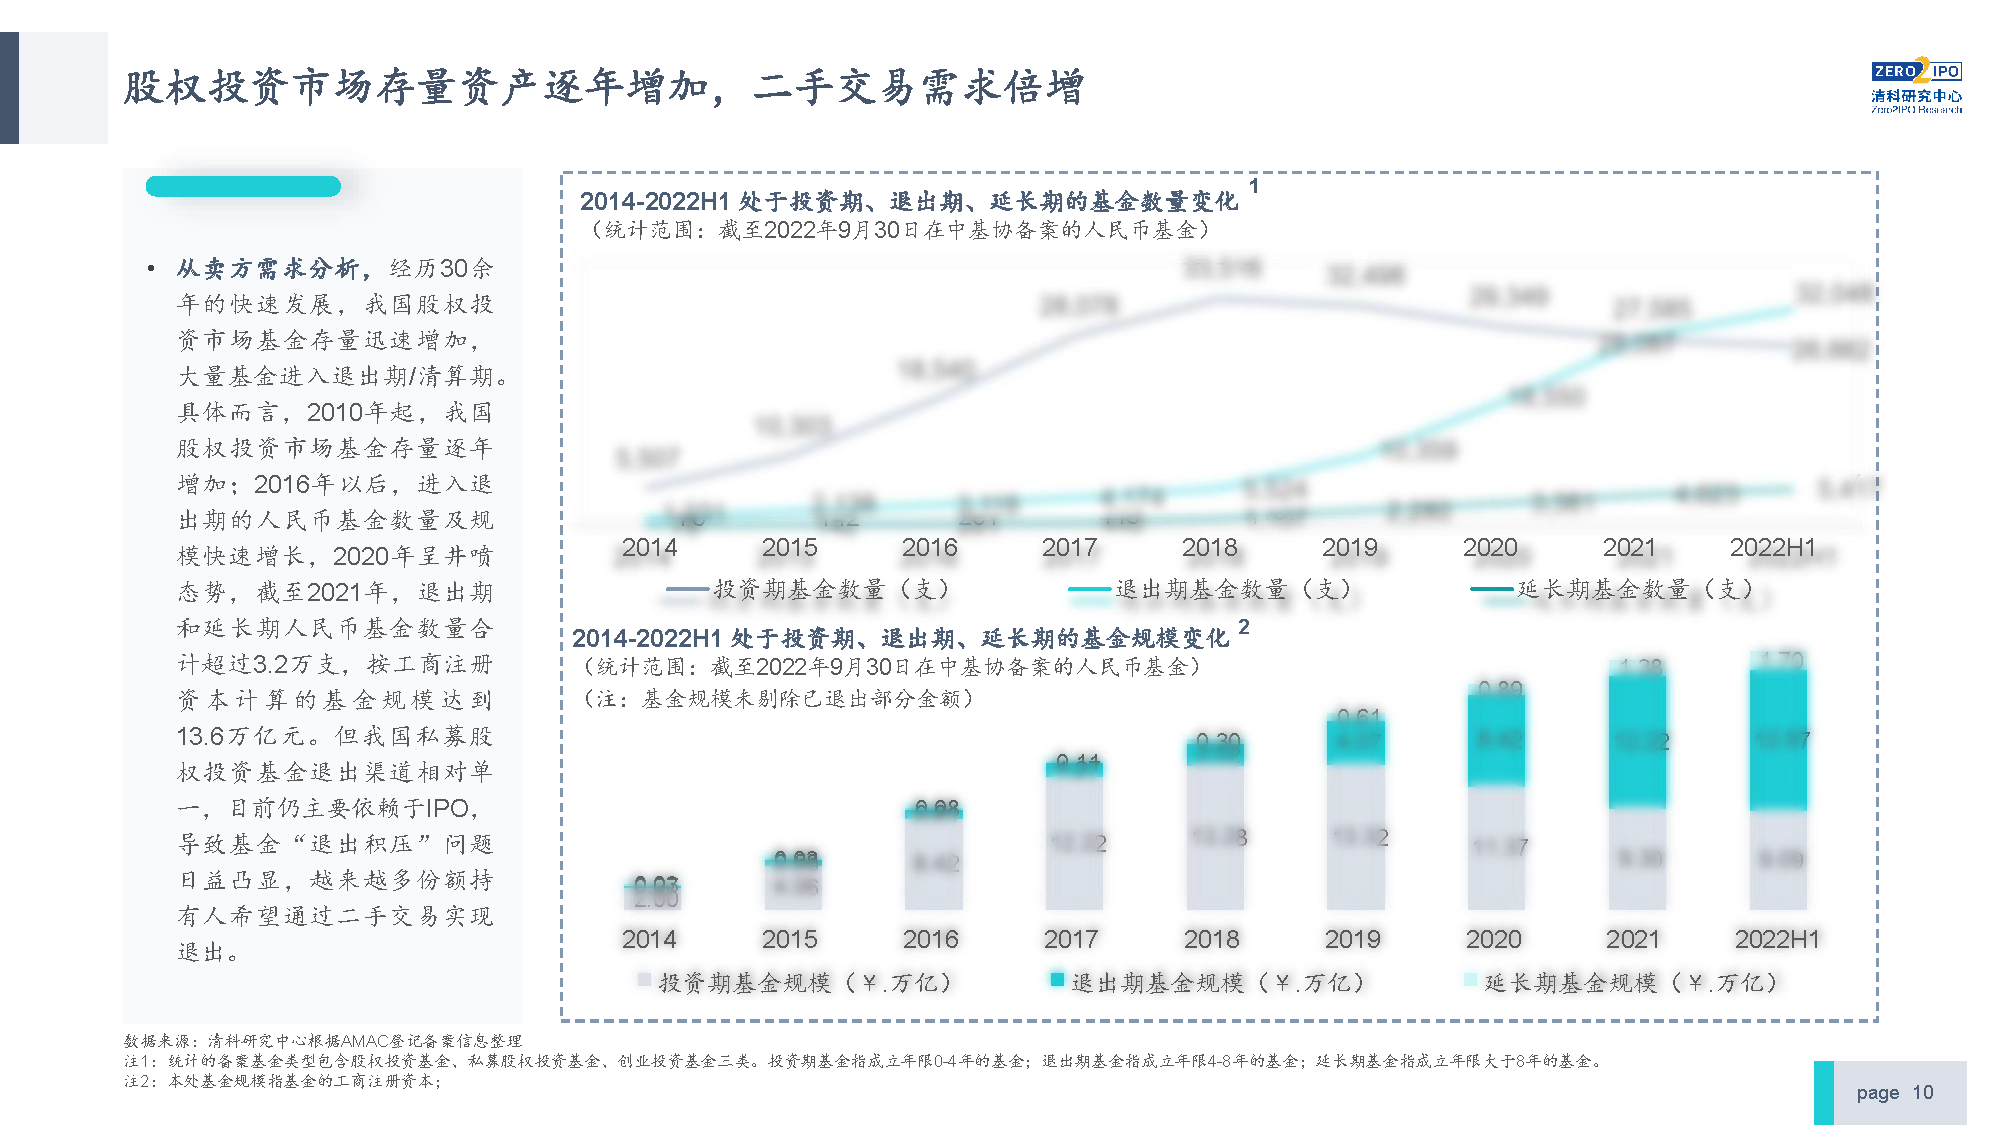 【发布版】2022年中国私募股权S交易研究报告_页面_10.png